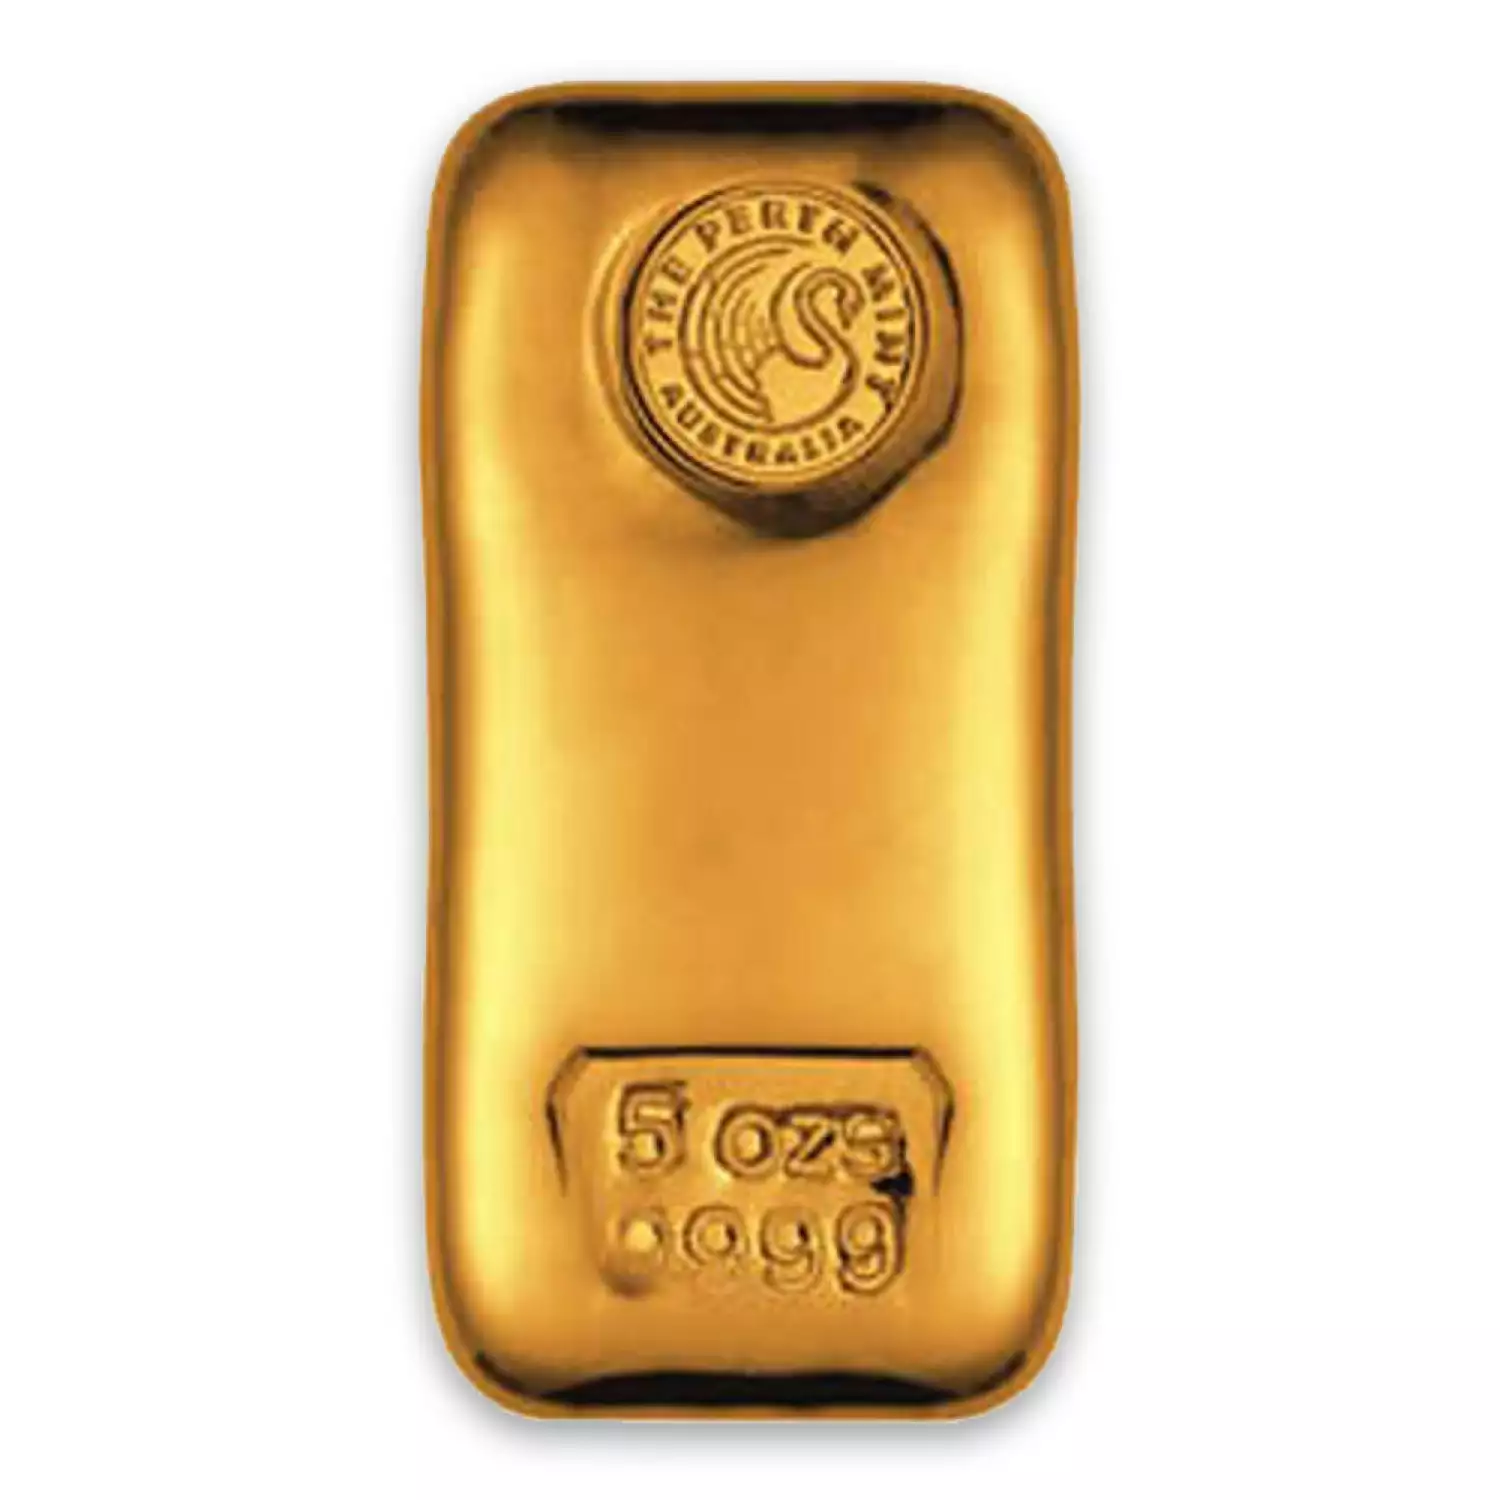 5oz Australian Perth Mint gold bar - cast